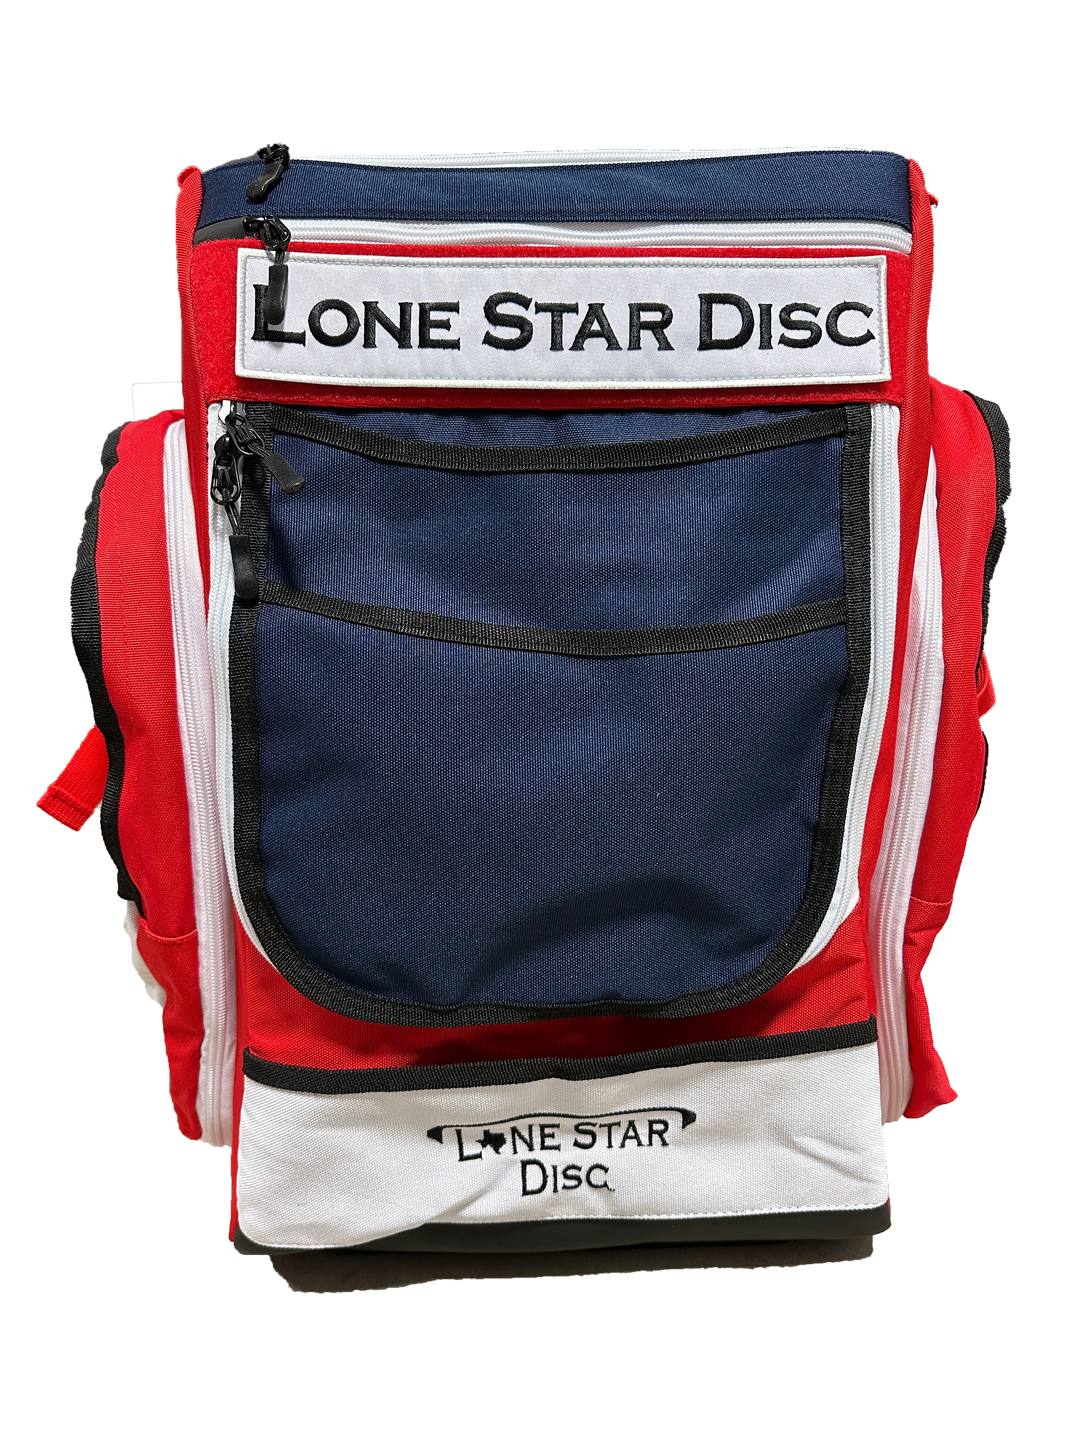 Lone Star Disc Texas Flag Bag